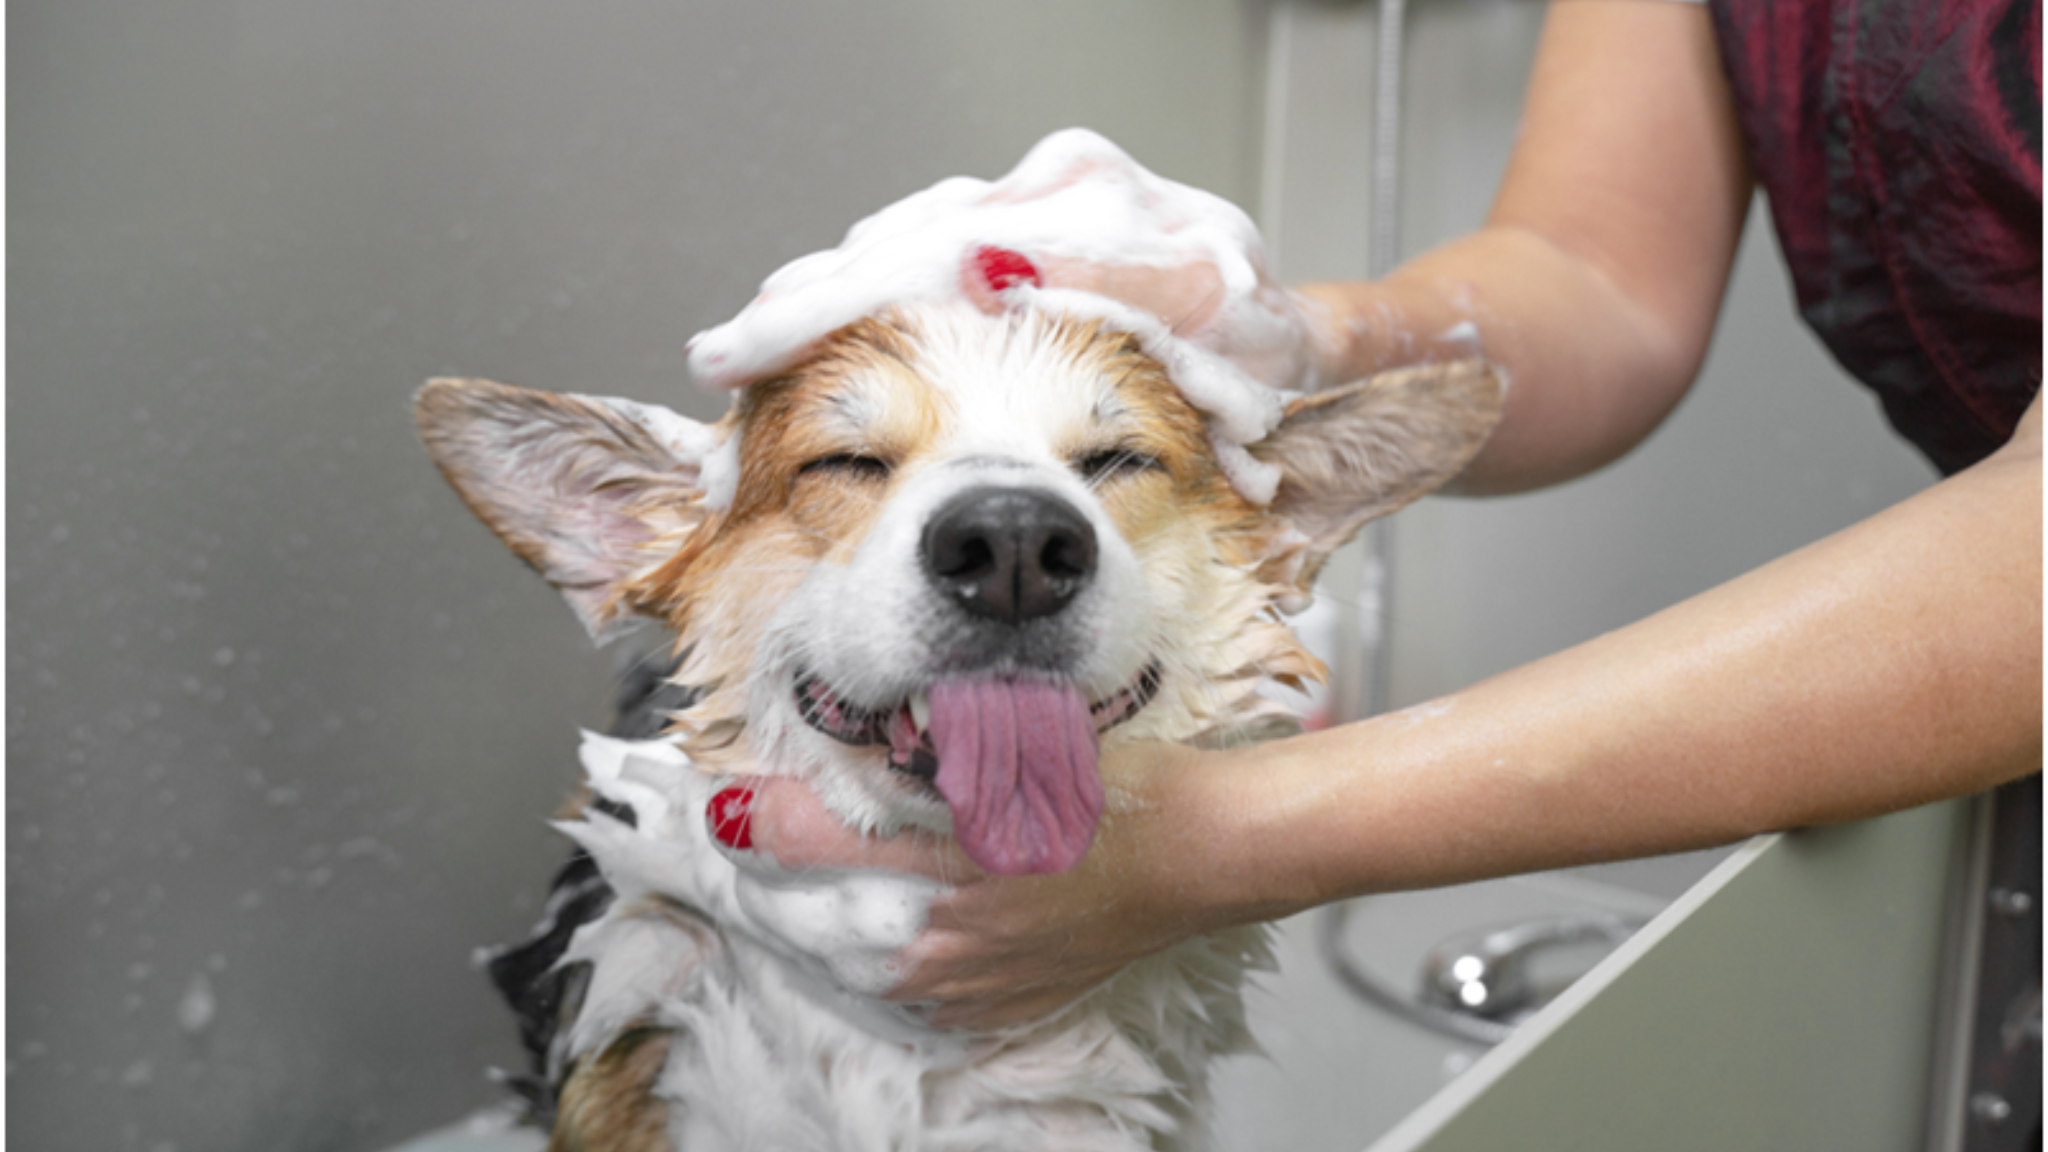 How to Bathe a Dog